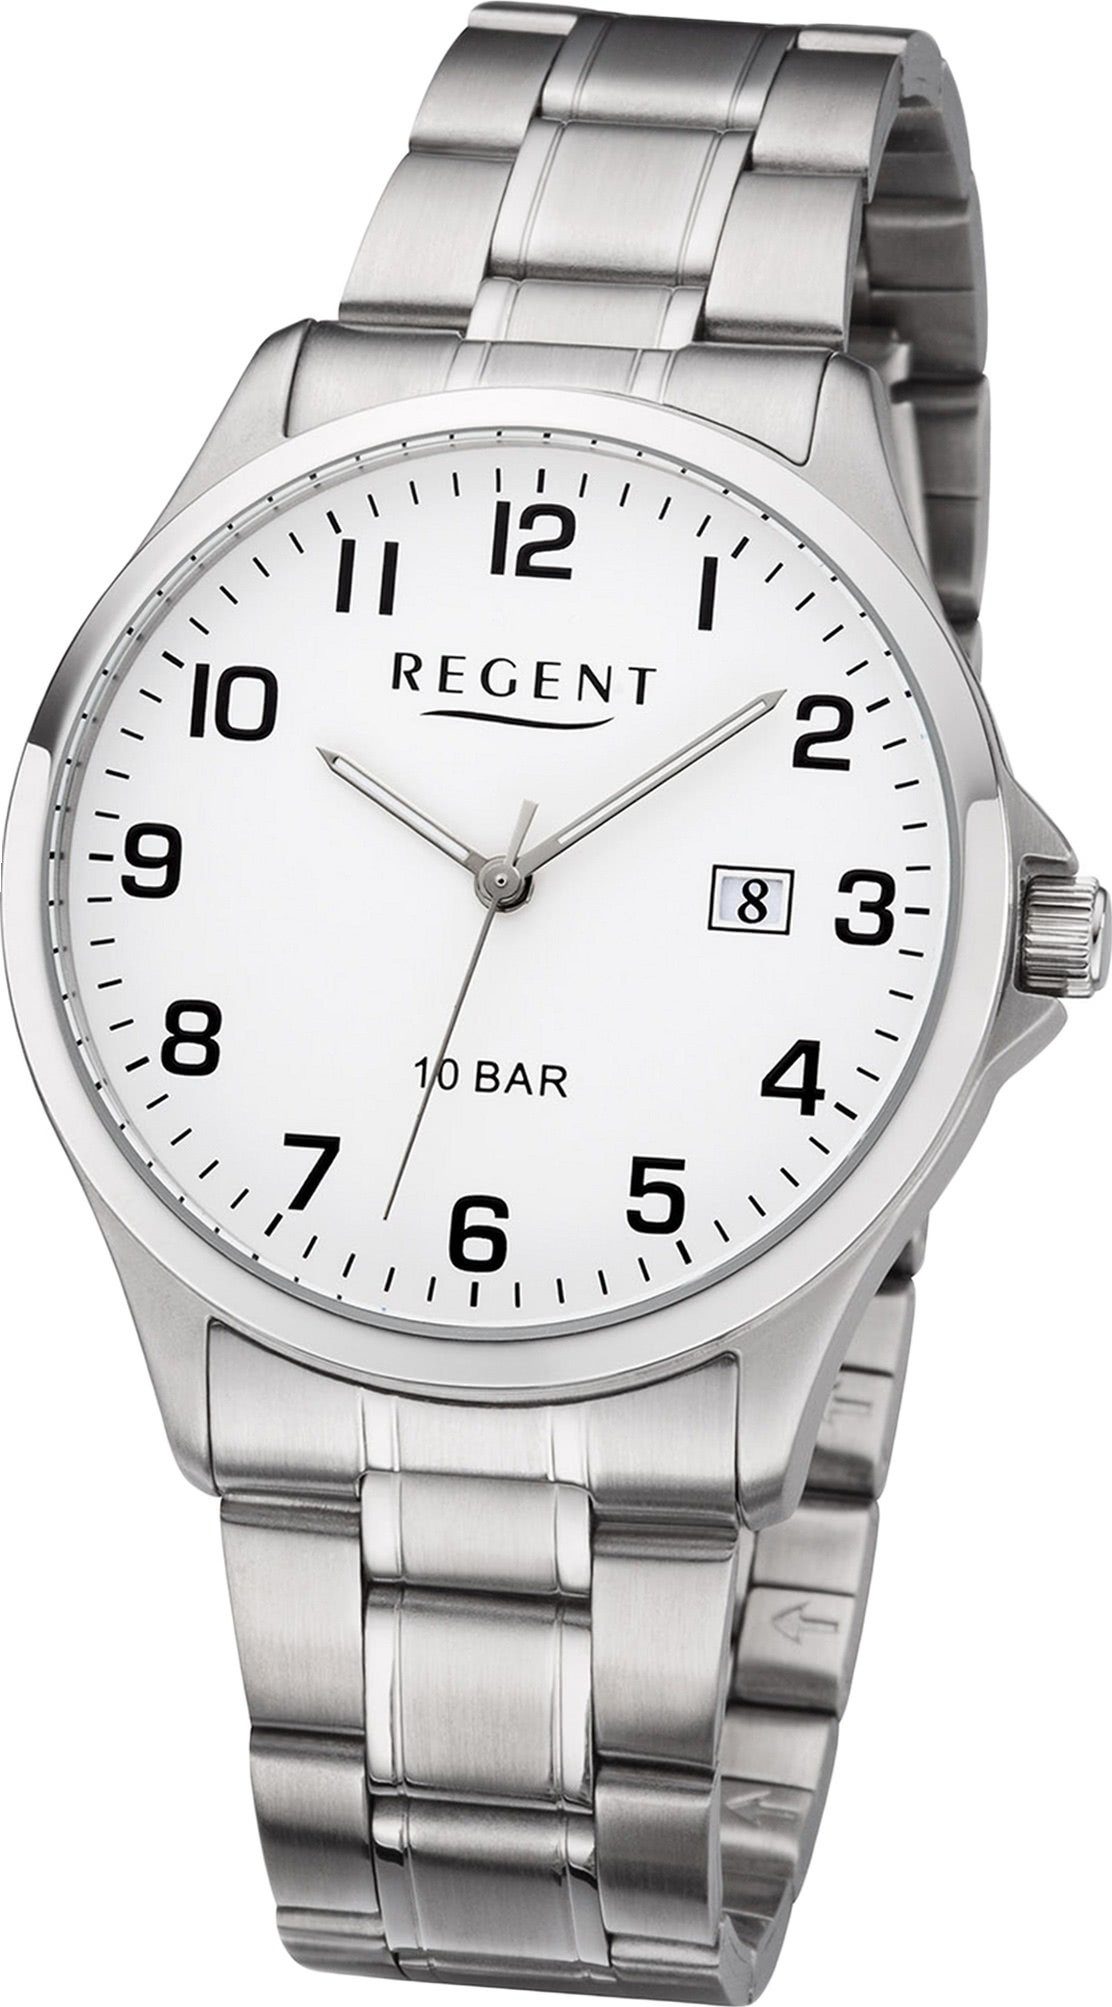 Herren Analog, Regent mittel Quarzuhr Metallarmband rundes Uhr Herrenuhr F-1190 silber, (ca. 39mm) Gehäuse, Regent Metall